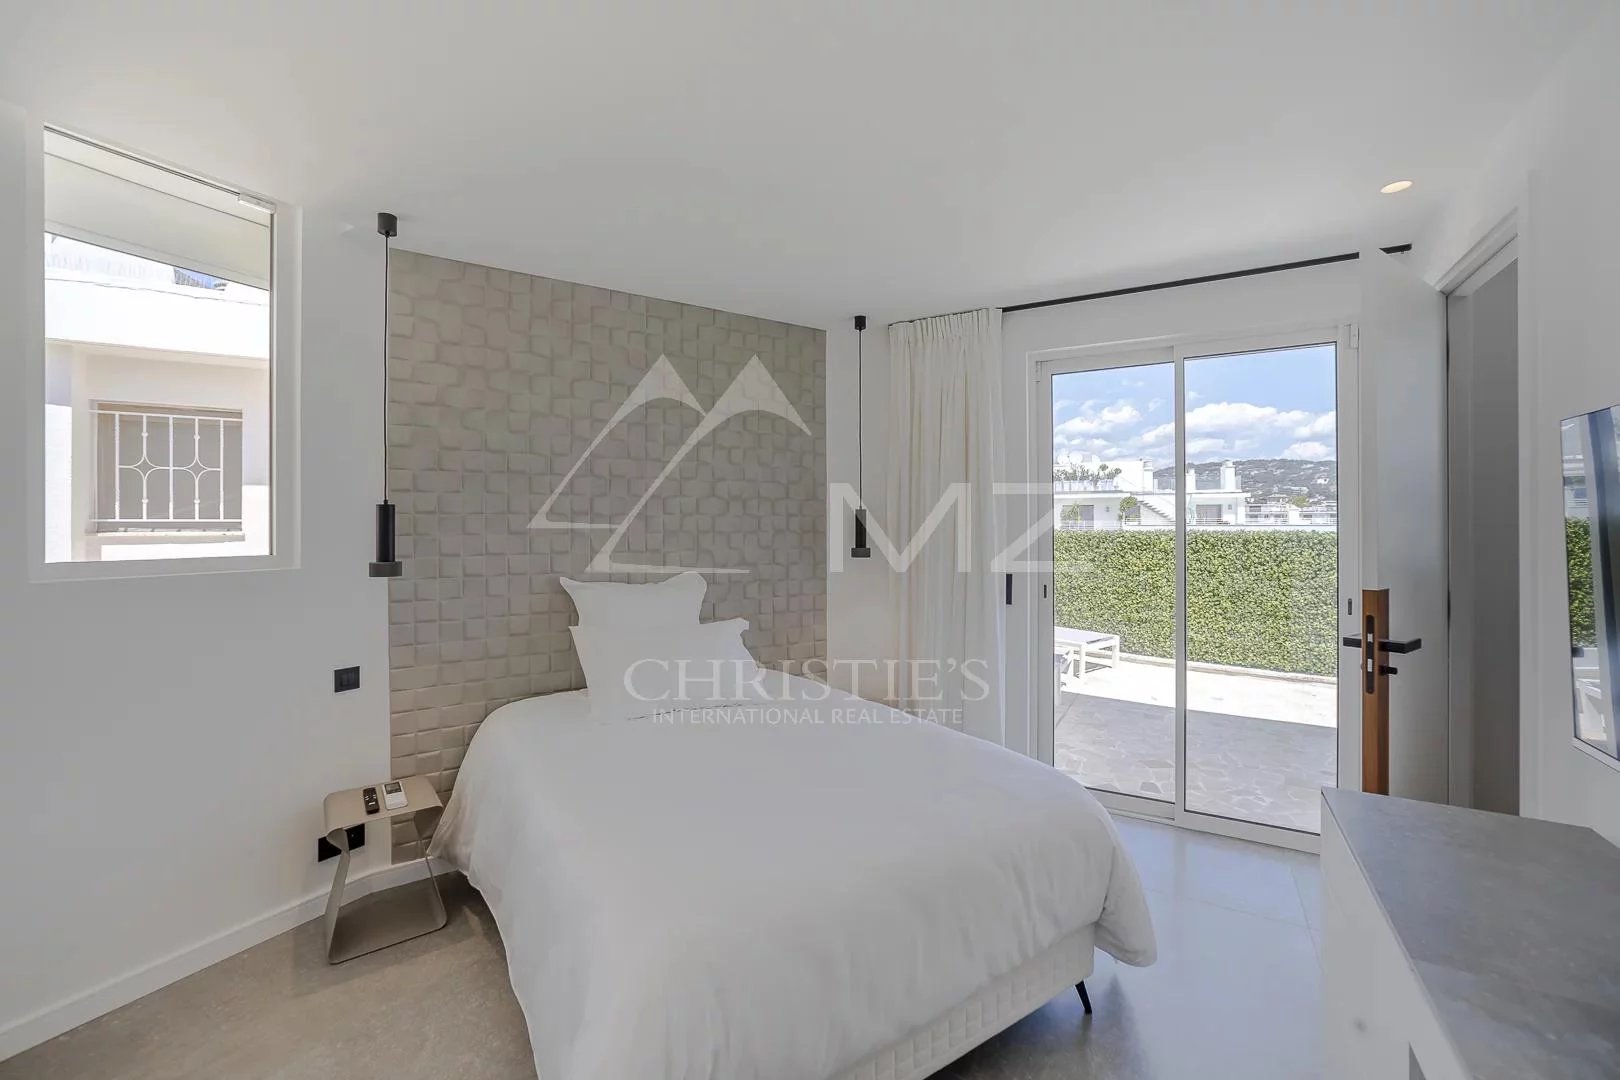 Cannes - Croisette - Superbe penthouse